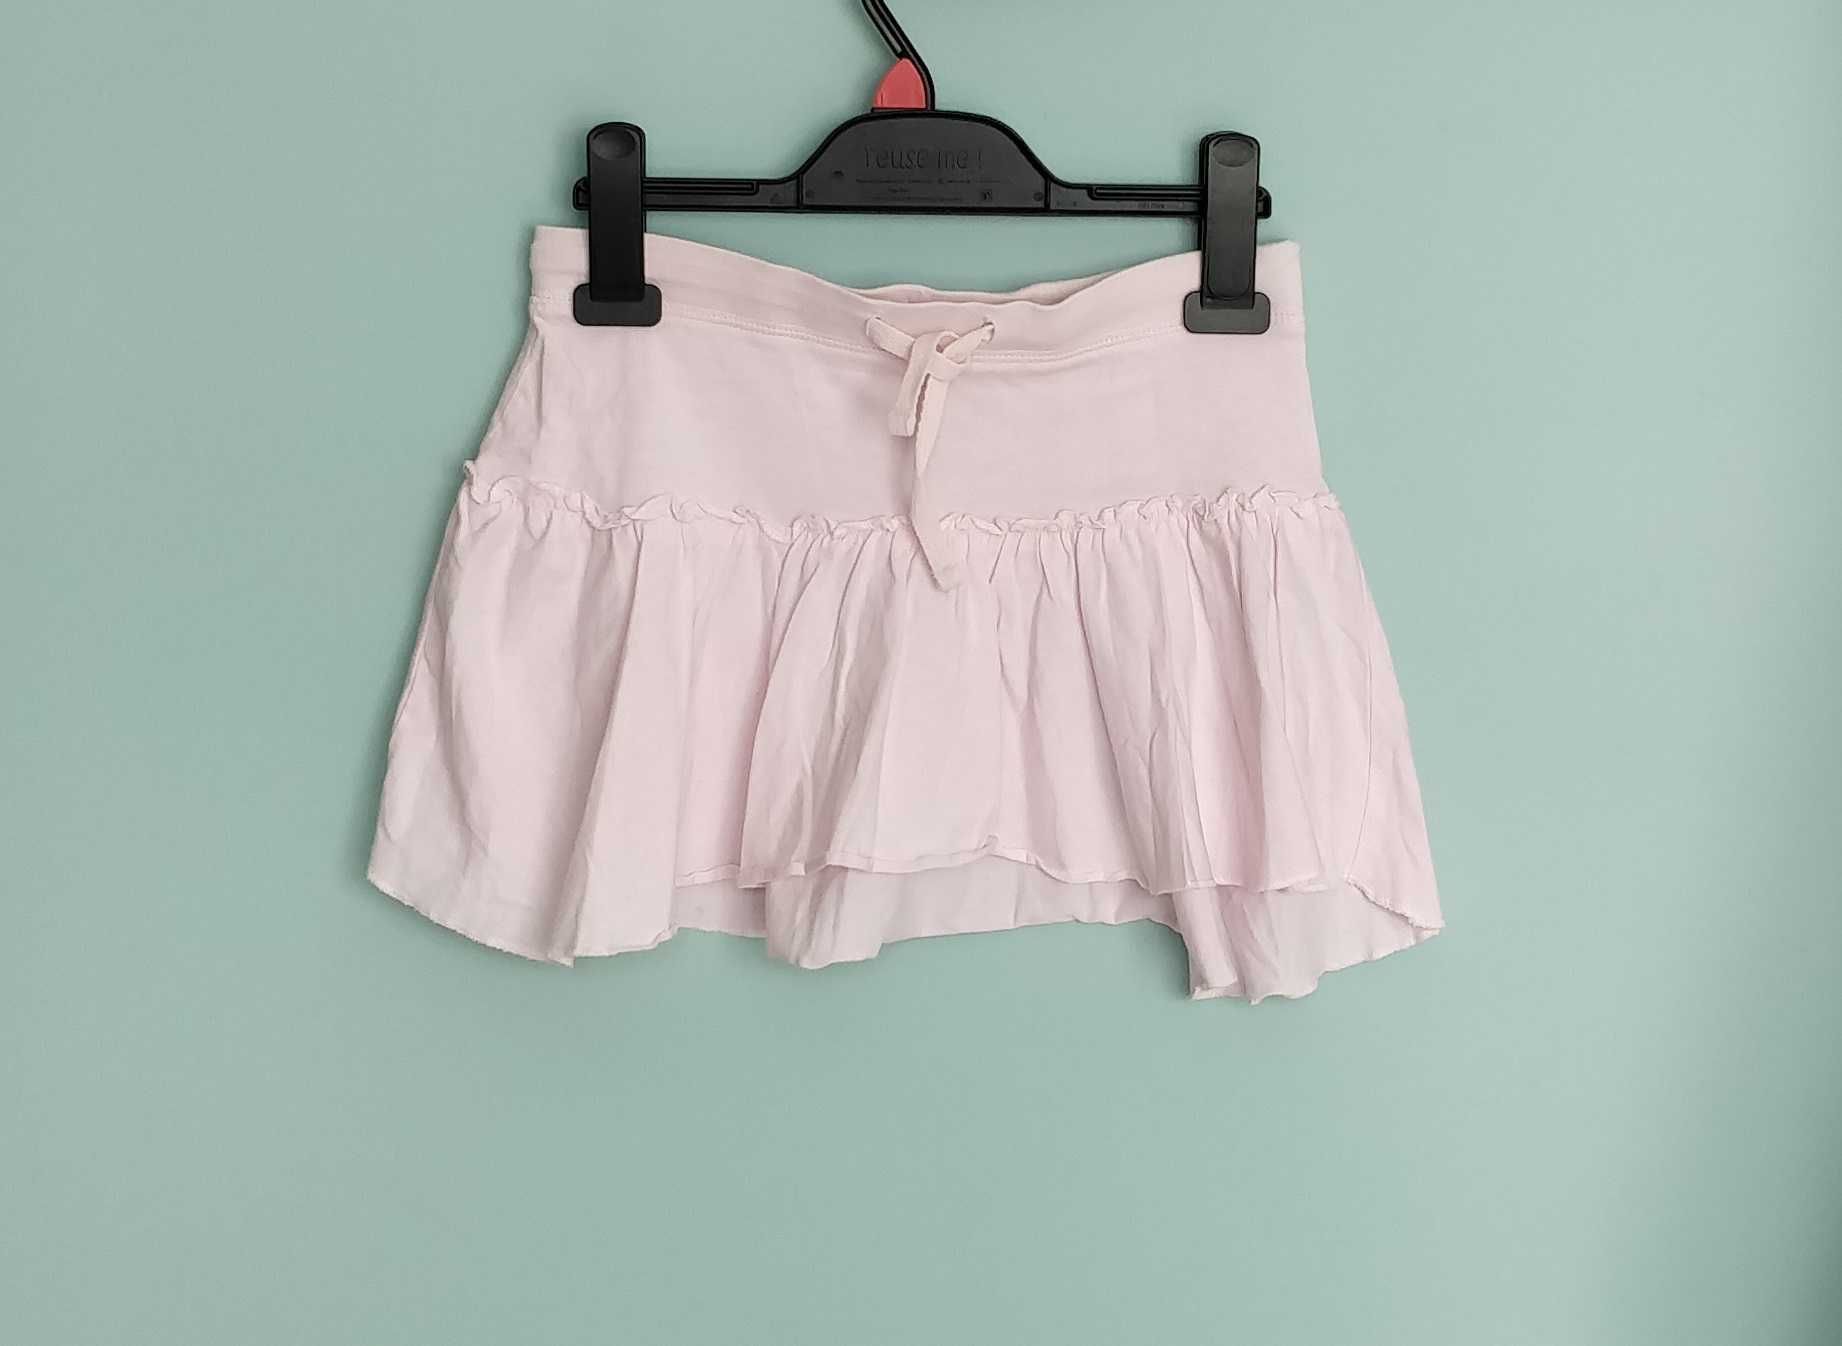 Spódnica H&M, spódniczka, rozmiar 146 cm (10 – 11 lat).